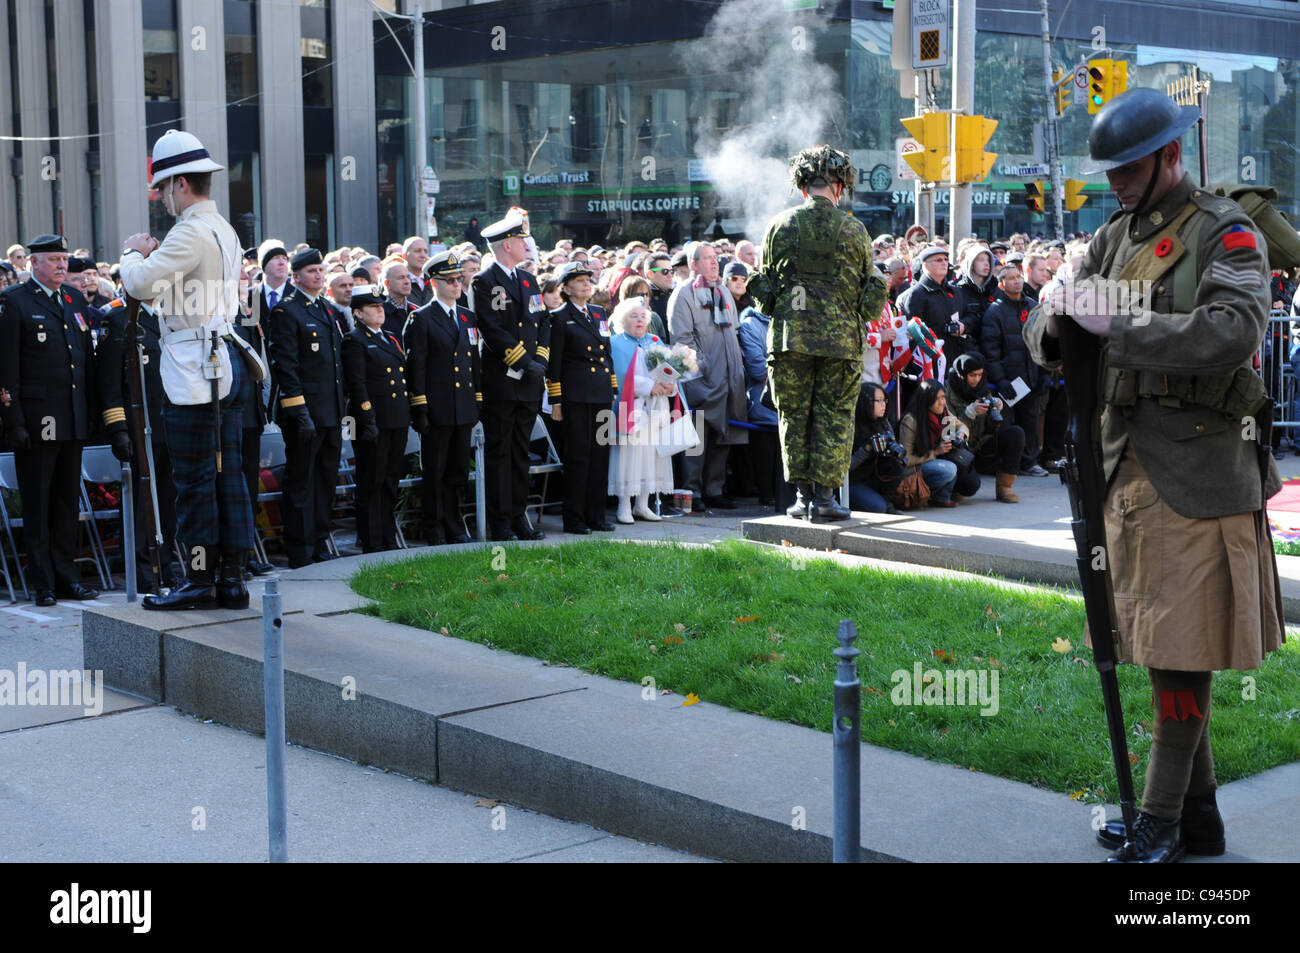 Drei Stille Wachposten auf der feierlichen Hut inmitten von Canadian Armed Forces Officers und Torontonians während der Erinnerung-Tag Zeremonie im alten Rathaus in Toronto, Ontario, Kanada, 11. November 2011. Stockfoto